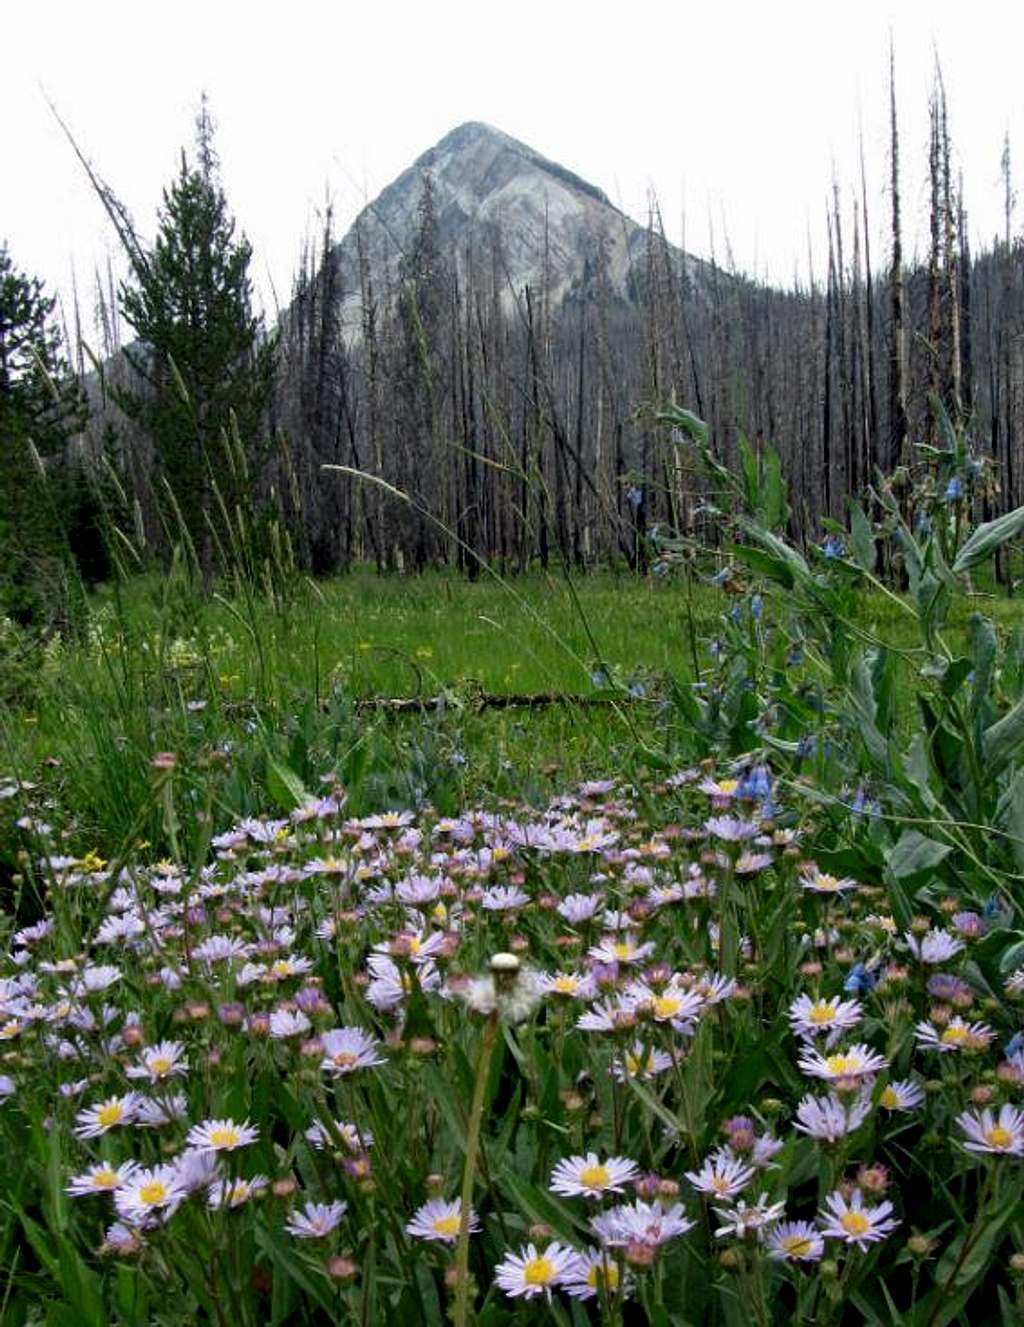 Un-named peak & wildflowers